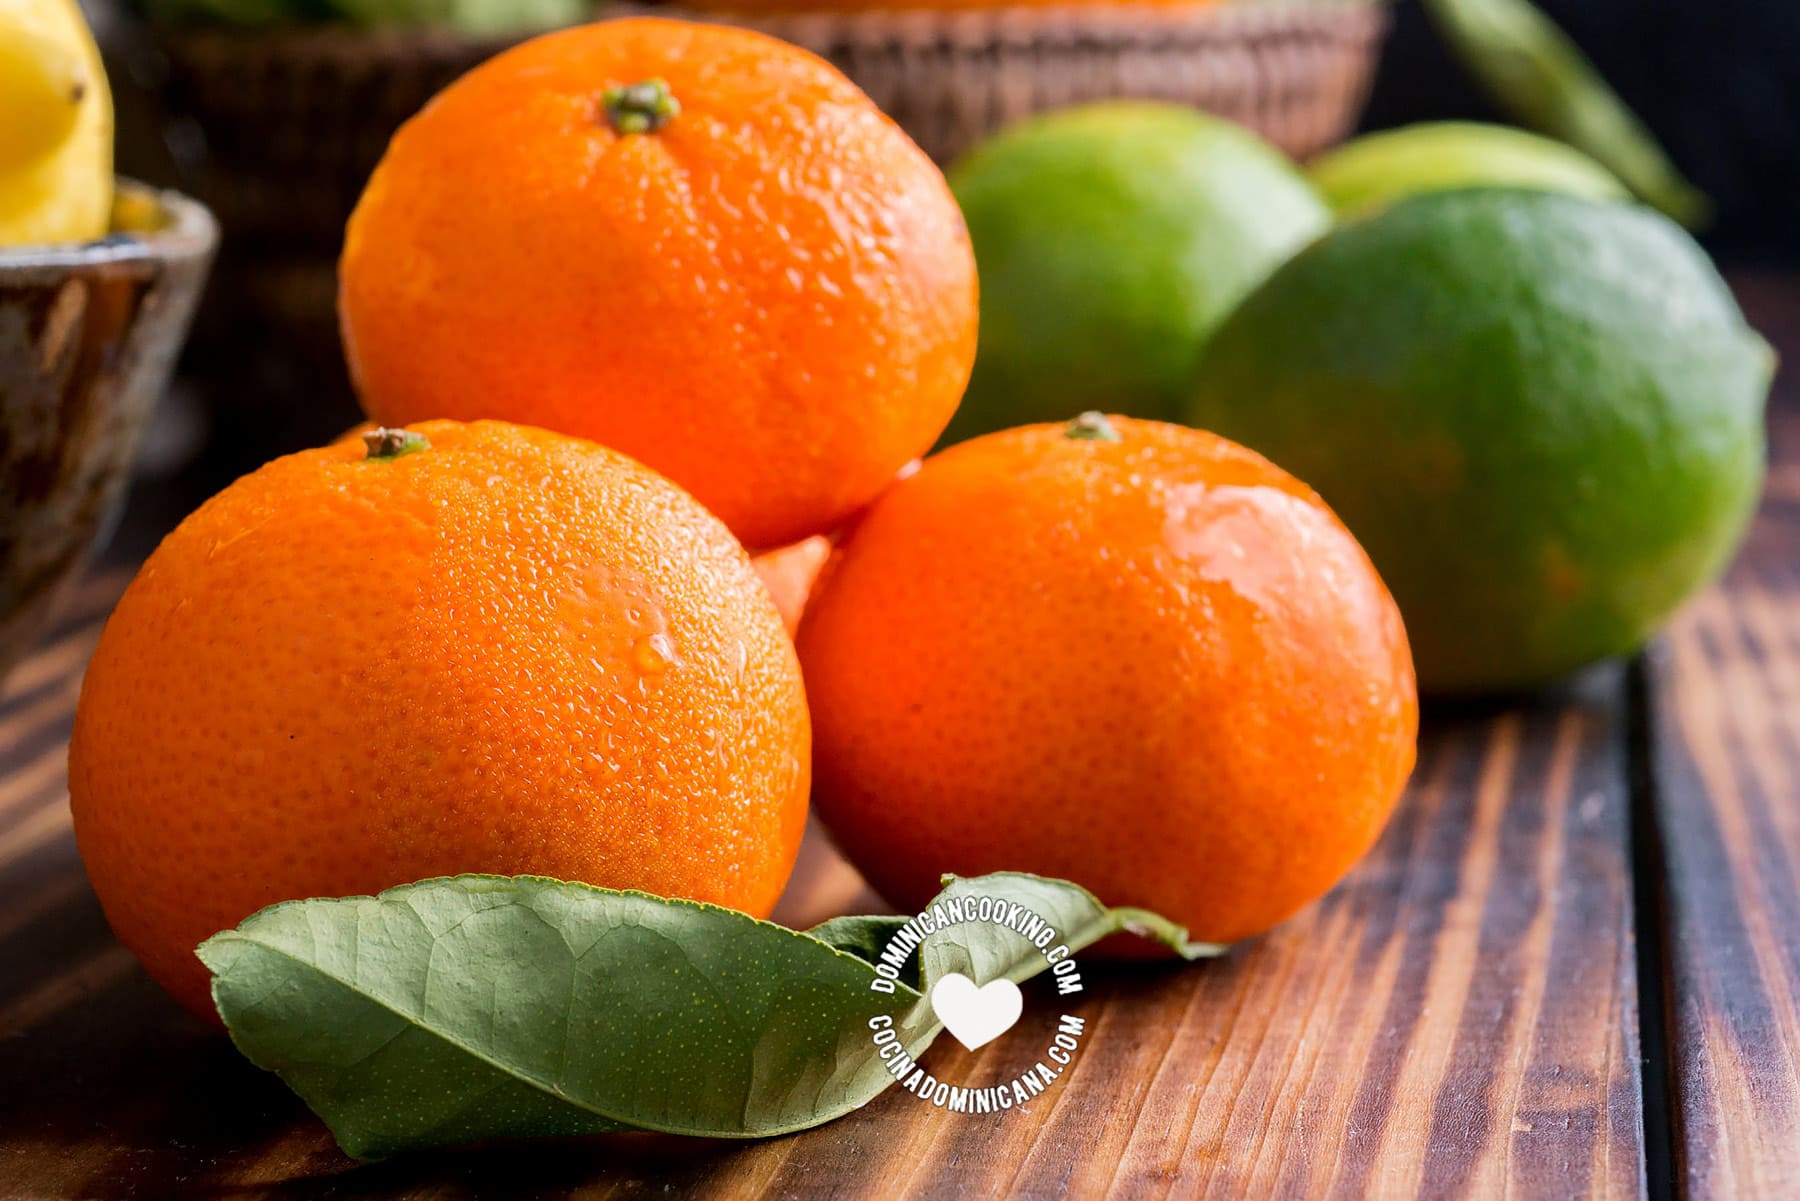 Mandarina (mandarins)